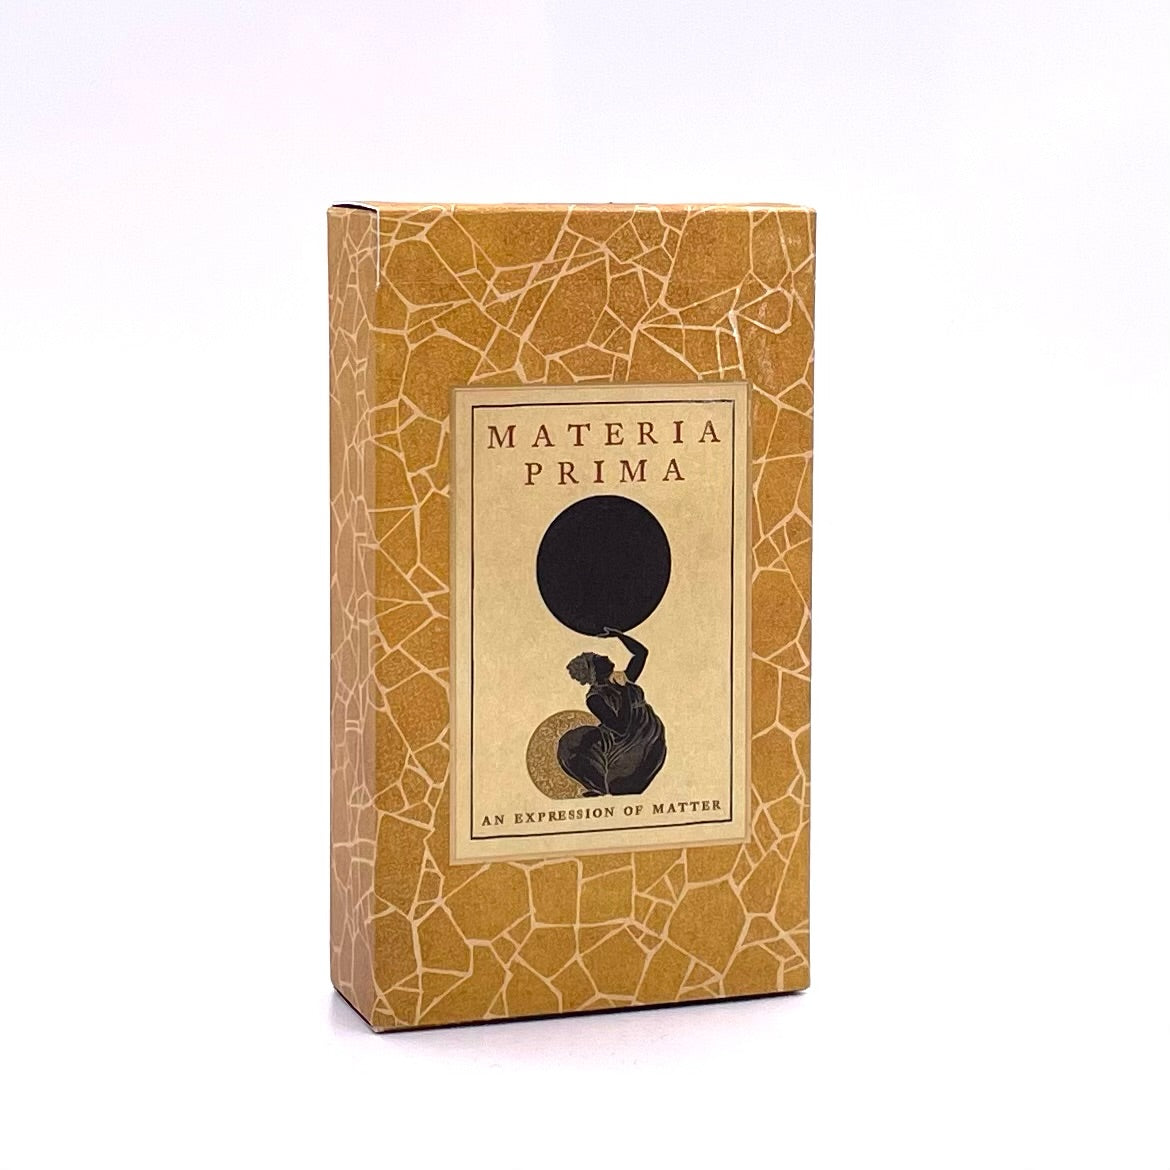 Box cover art of the Materia Prima tarot deck.